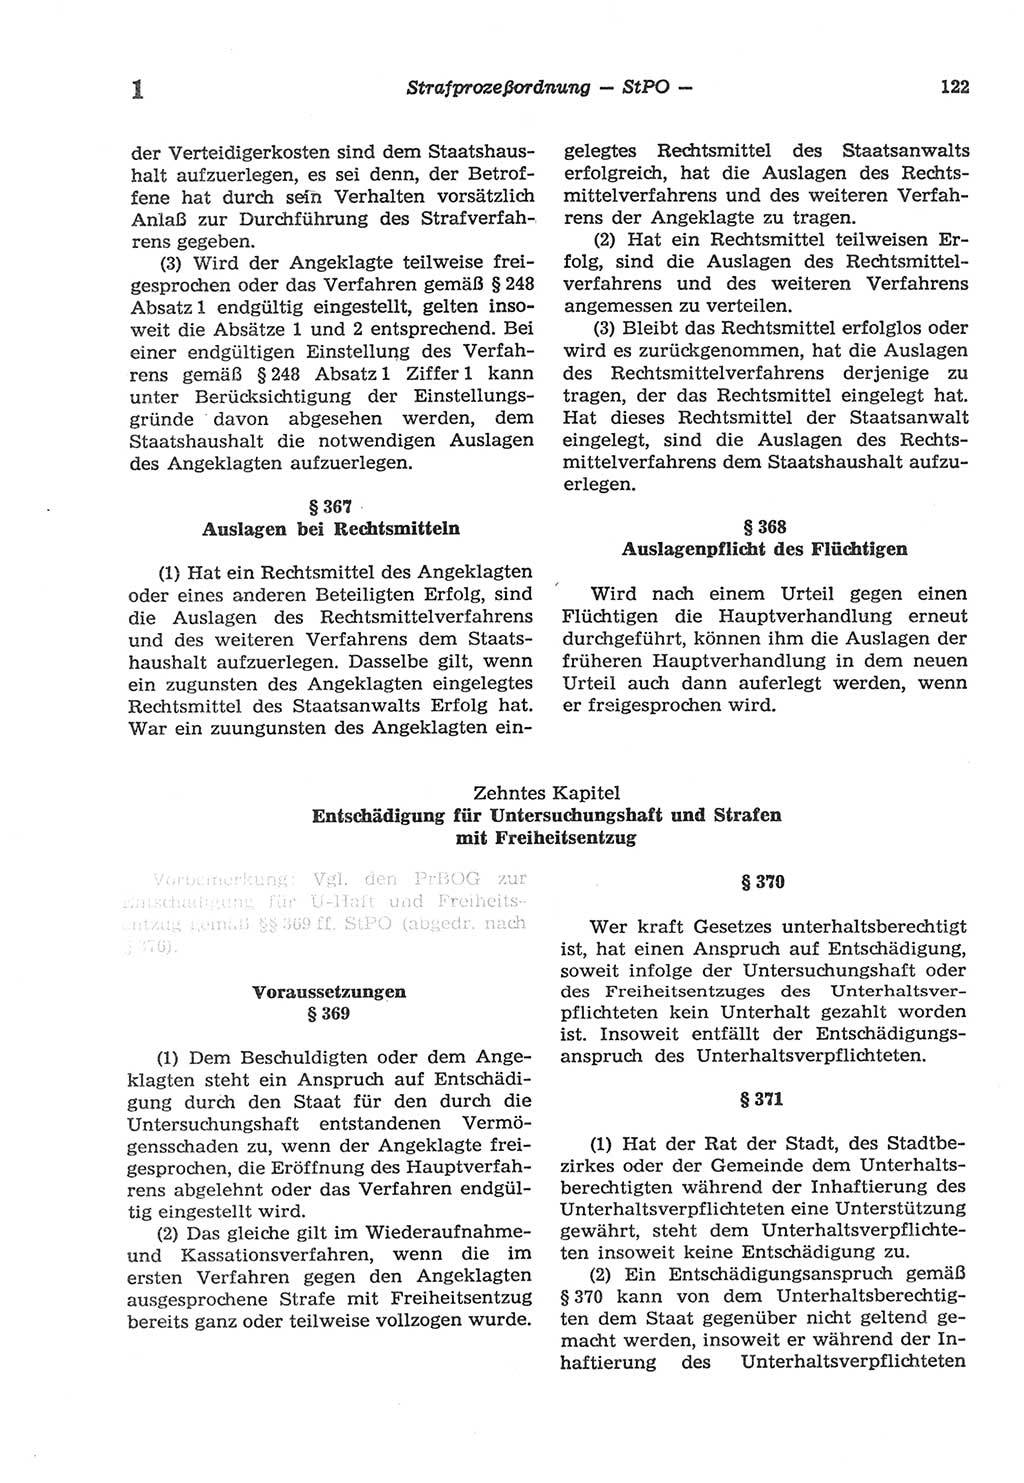 Strafprozeßordnung (StPO) der Deutschen Demokratischen Republik (DDR) sowie angrenzende Gesetze und Bestimmungen 1977, Seite 122 (StPO DDR Ges. Best. 1977, S. 122)